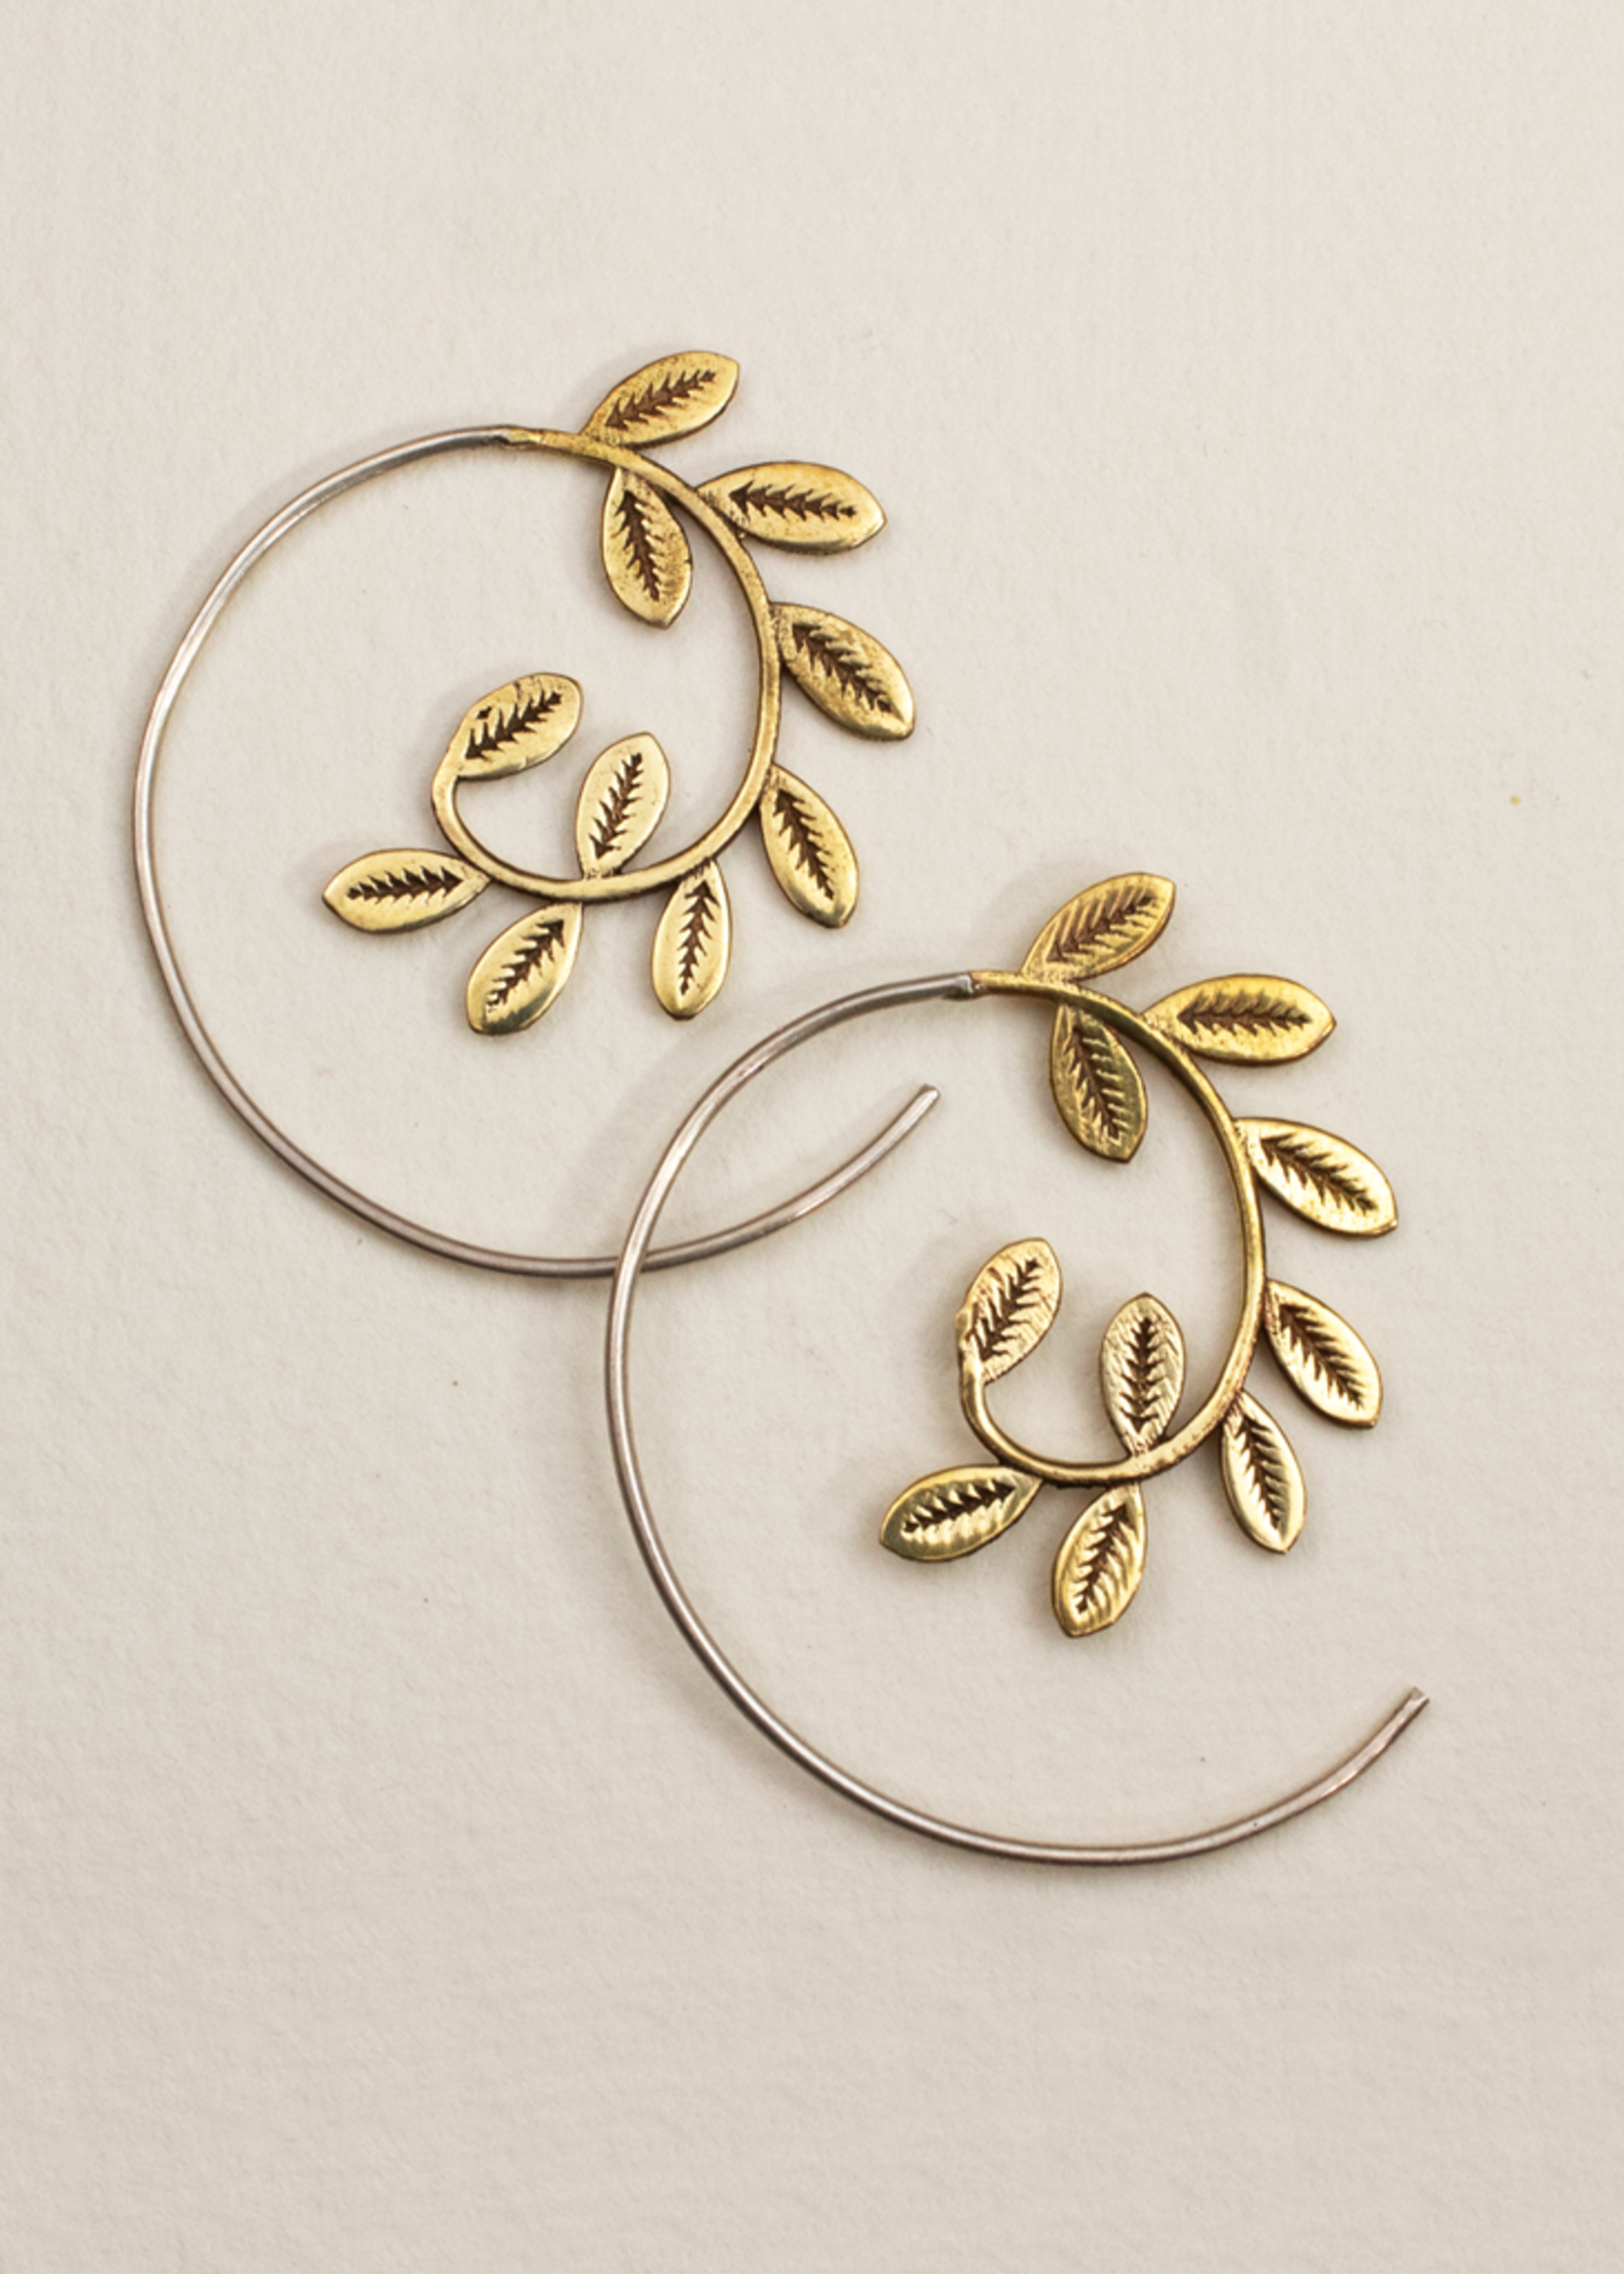 dZi Laurel Wreath Earrings